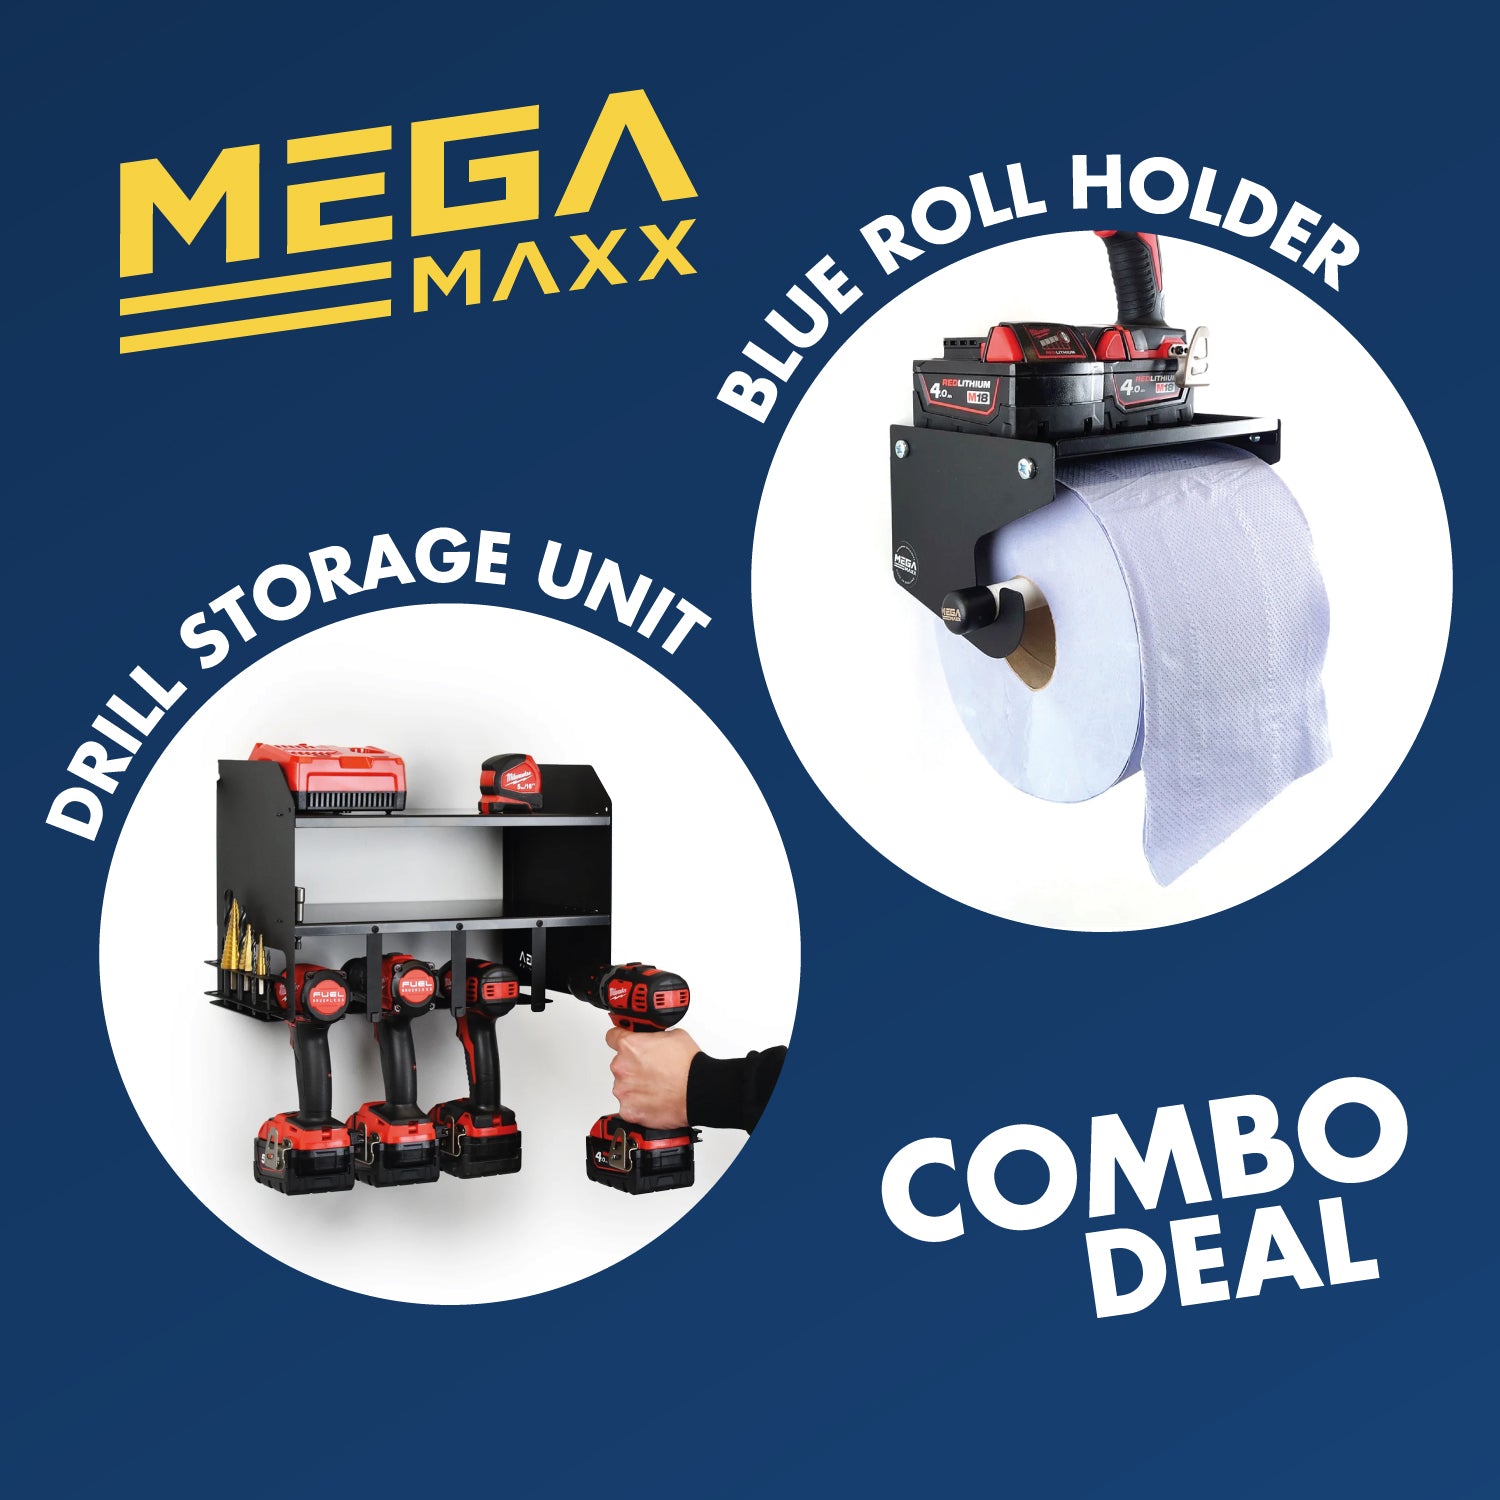 MegaMaxx UK™ Combo Deal - Power Tool Unit + Blue Roll Holder